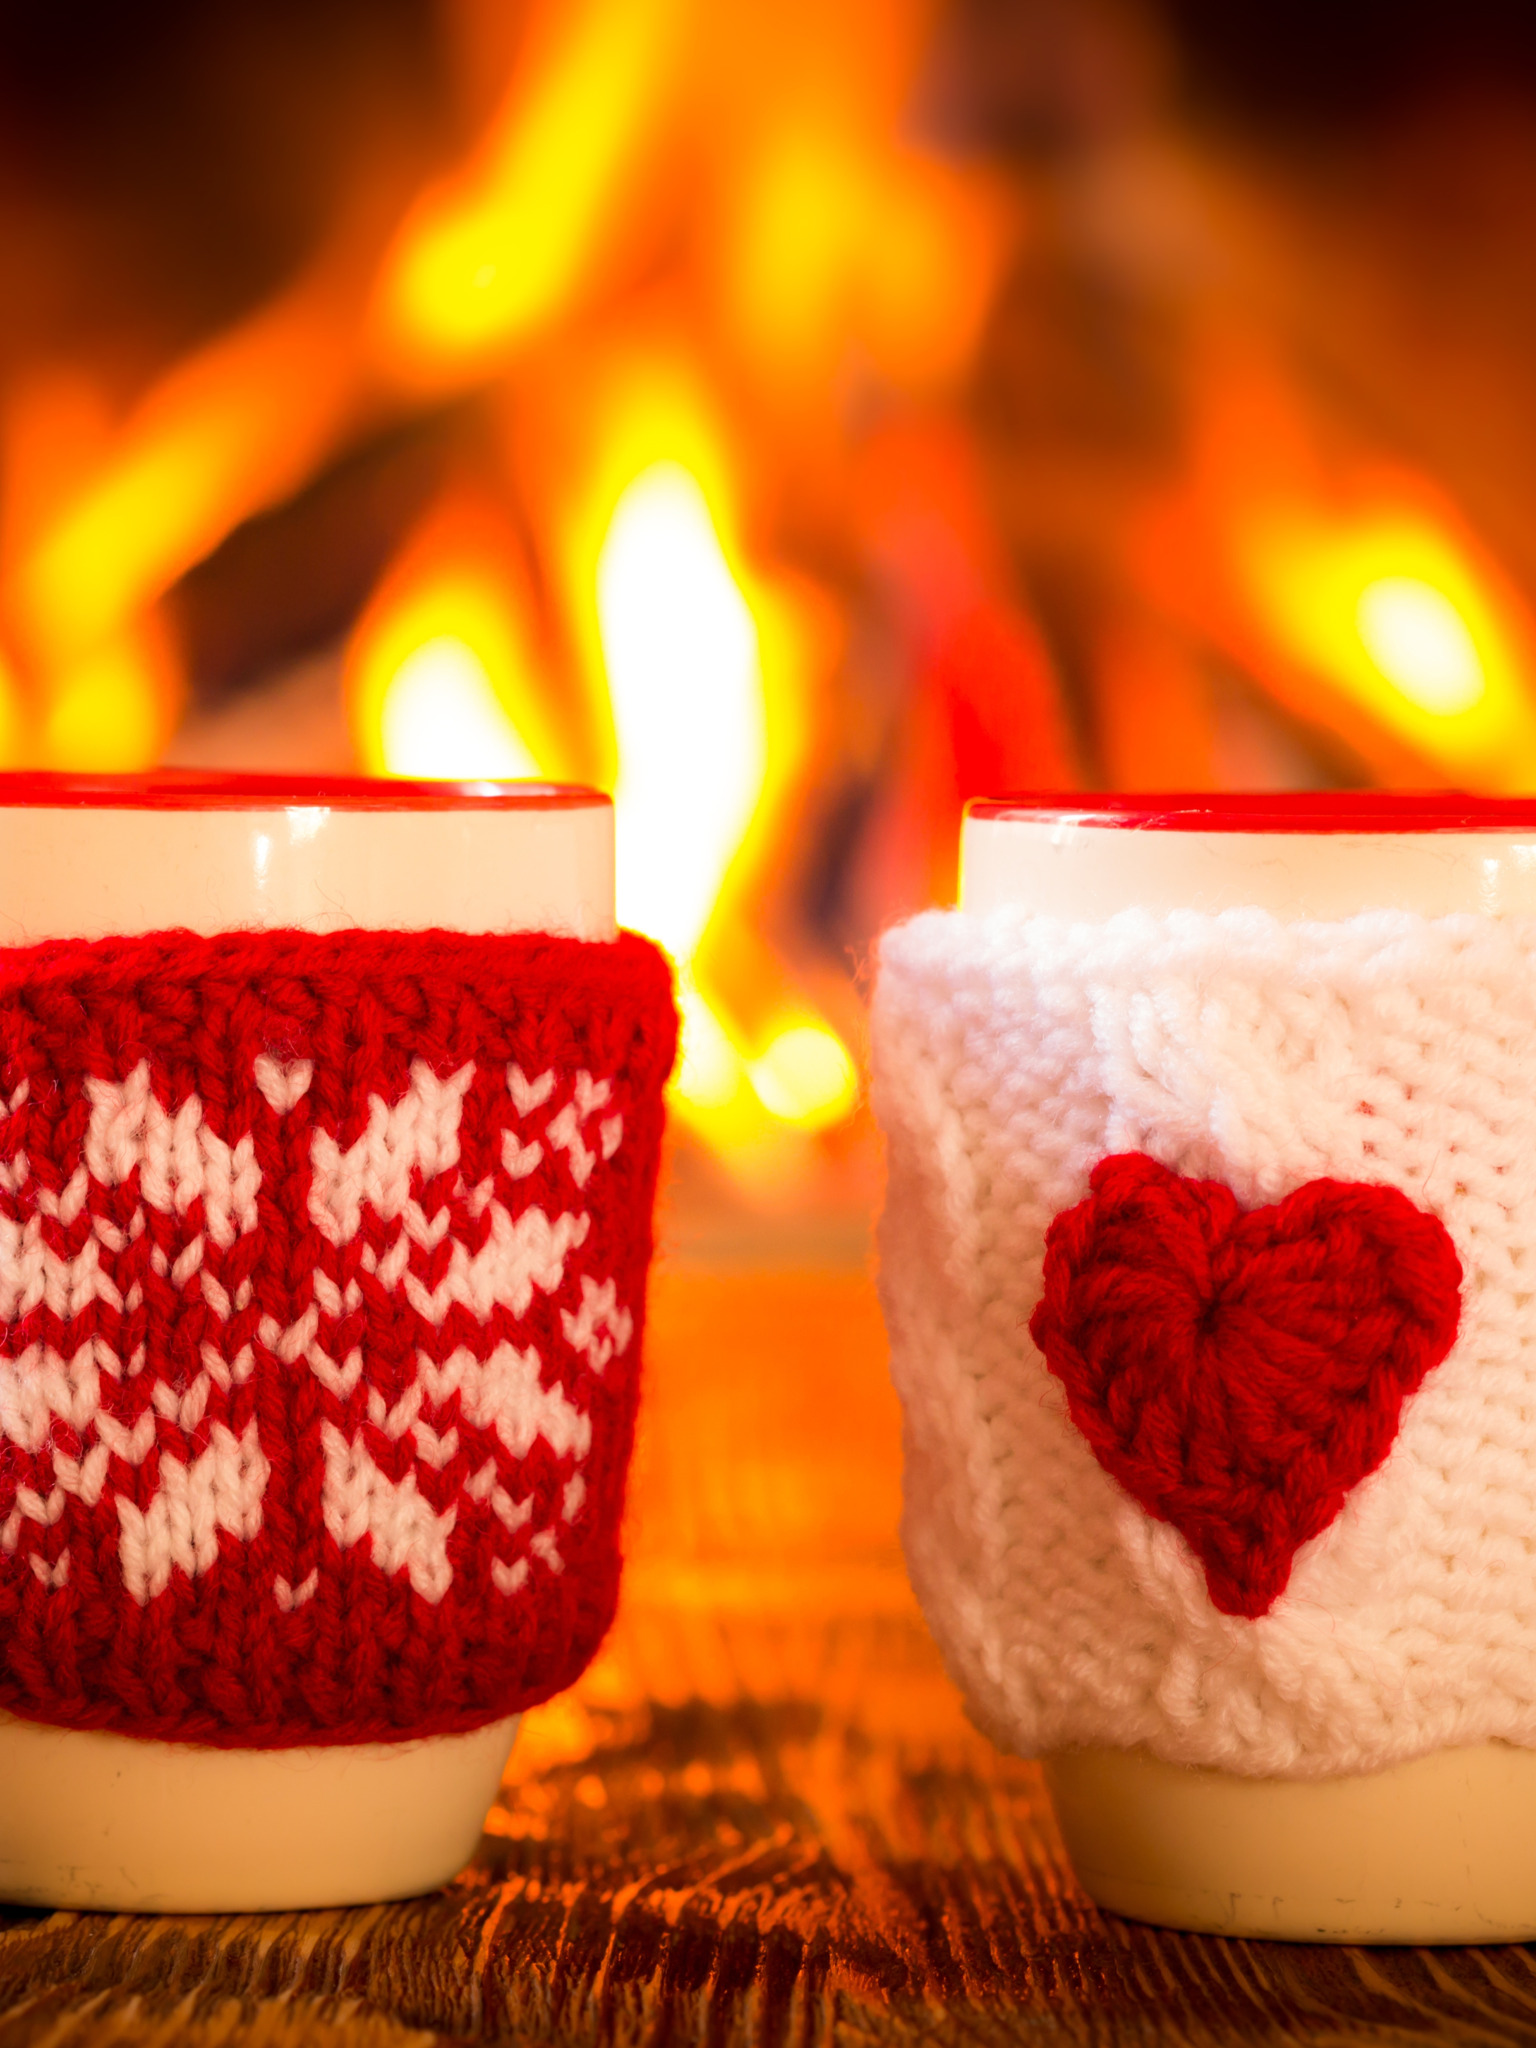 Тепла и уюта в сердце. Уютная чашка. Уютная зима. Уют и тепло. Зимний кофе.